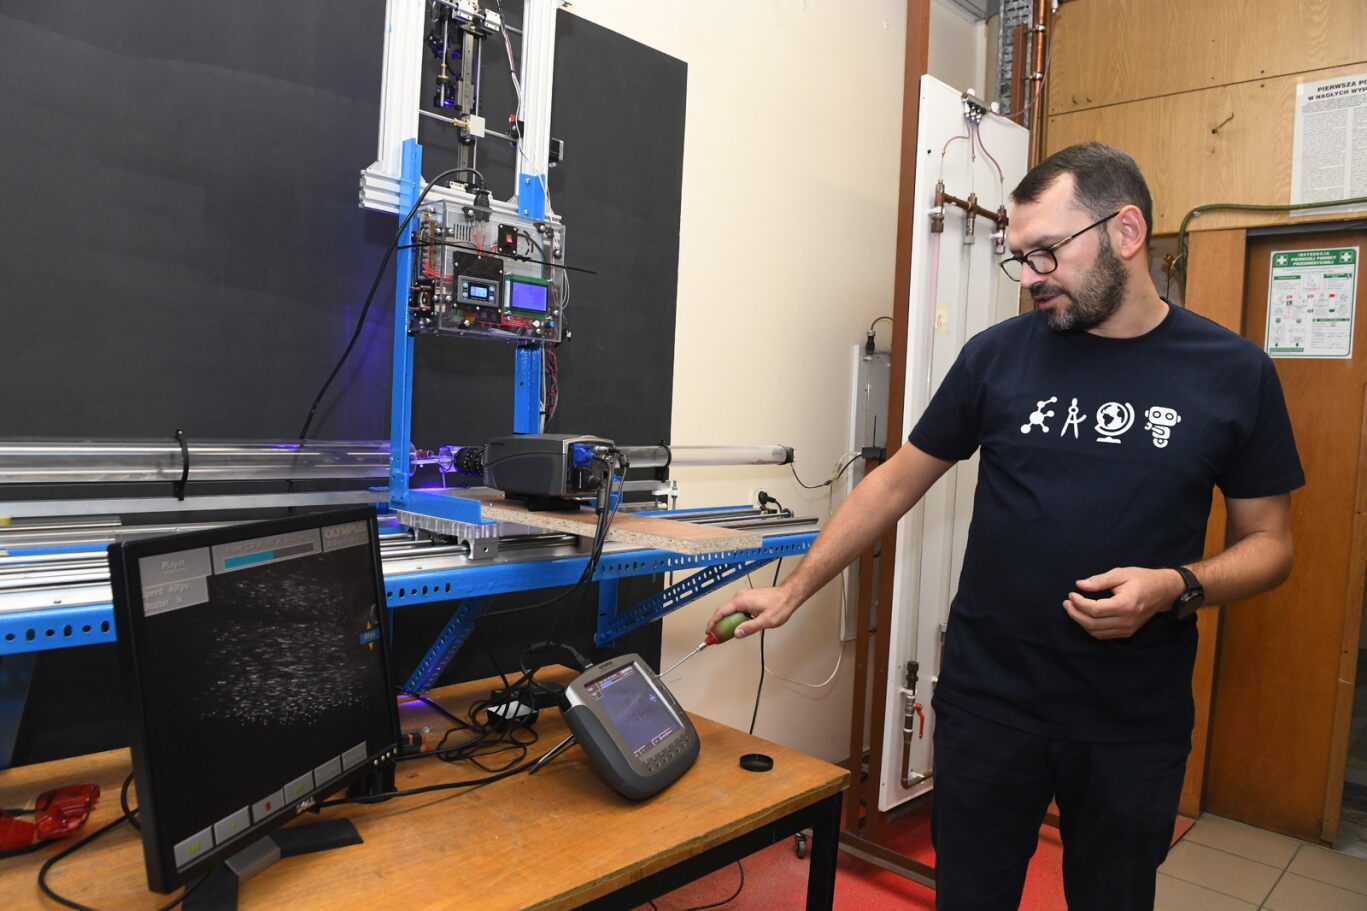 Pracownik PK pokazuje sprzęt laboratoryjny podczas Małopolskiej Nocy Naukowców w 2022 roku